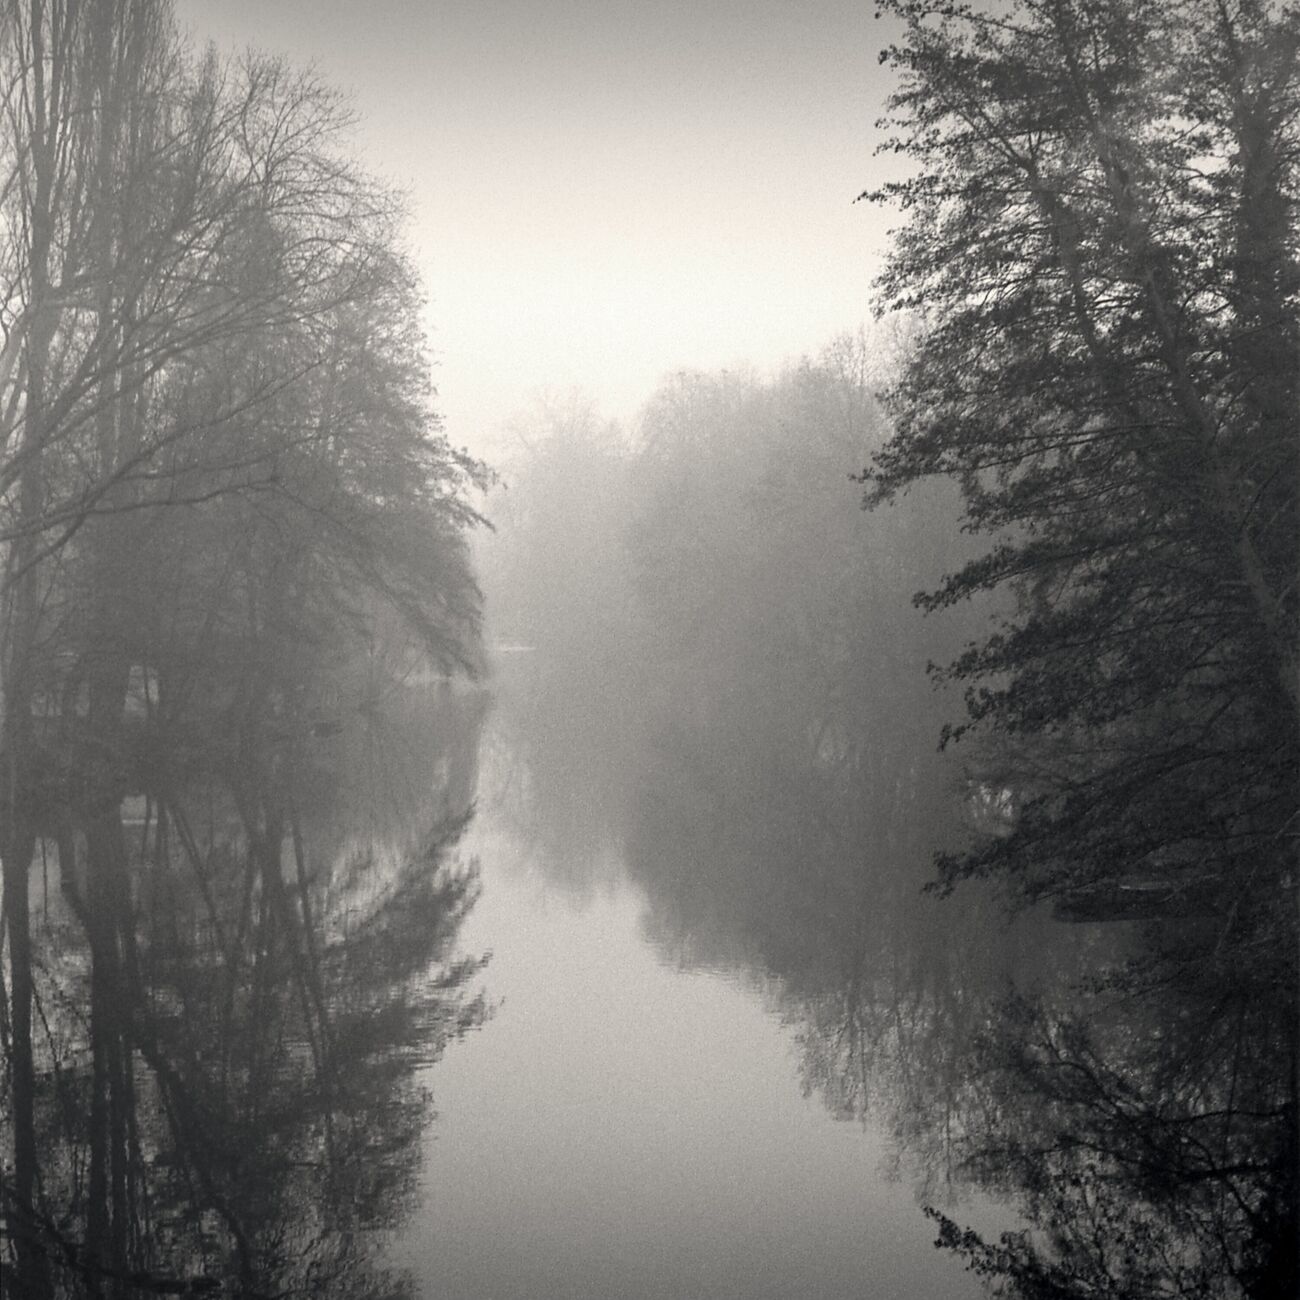 Dawn On Clain River, Poitiers, France. Décembre 1989. Ref-911 - Denis Olivier Photographie